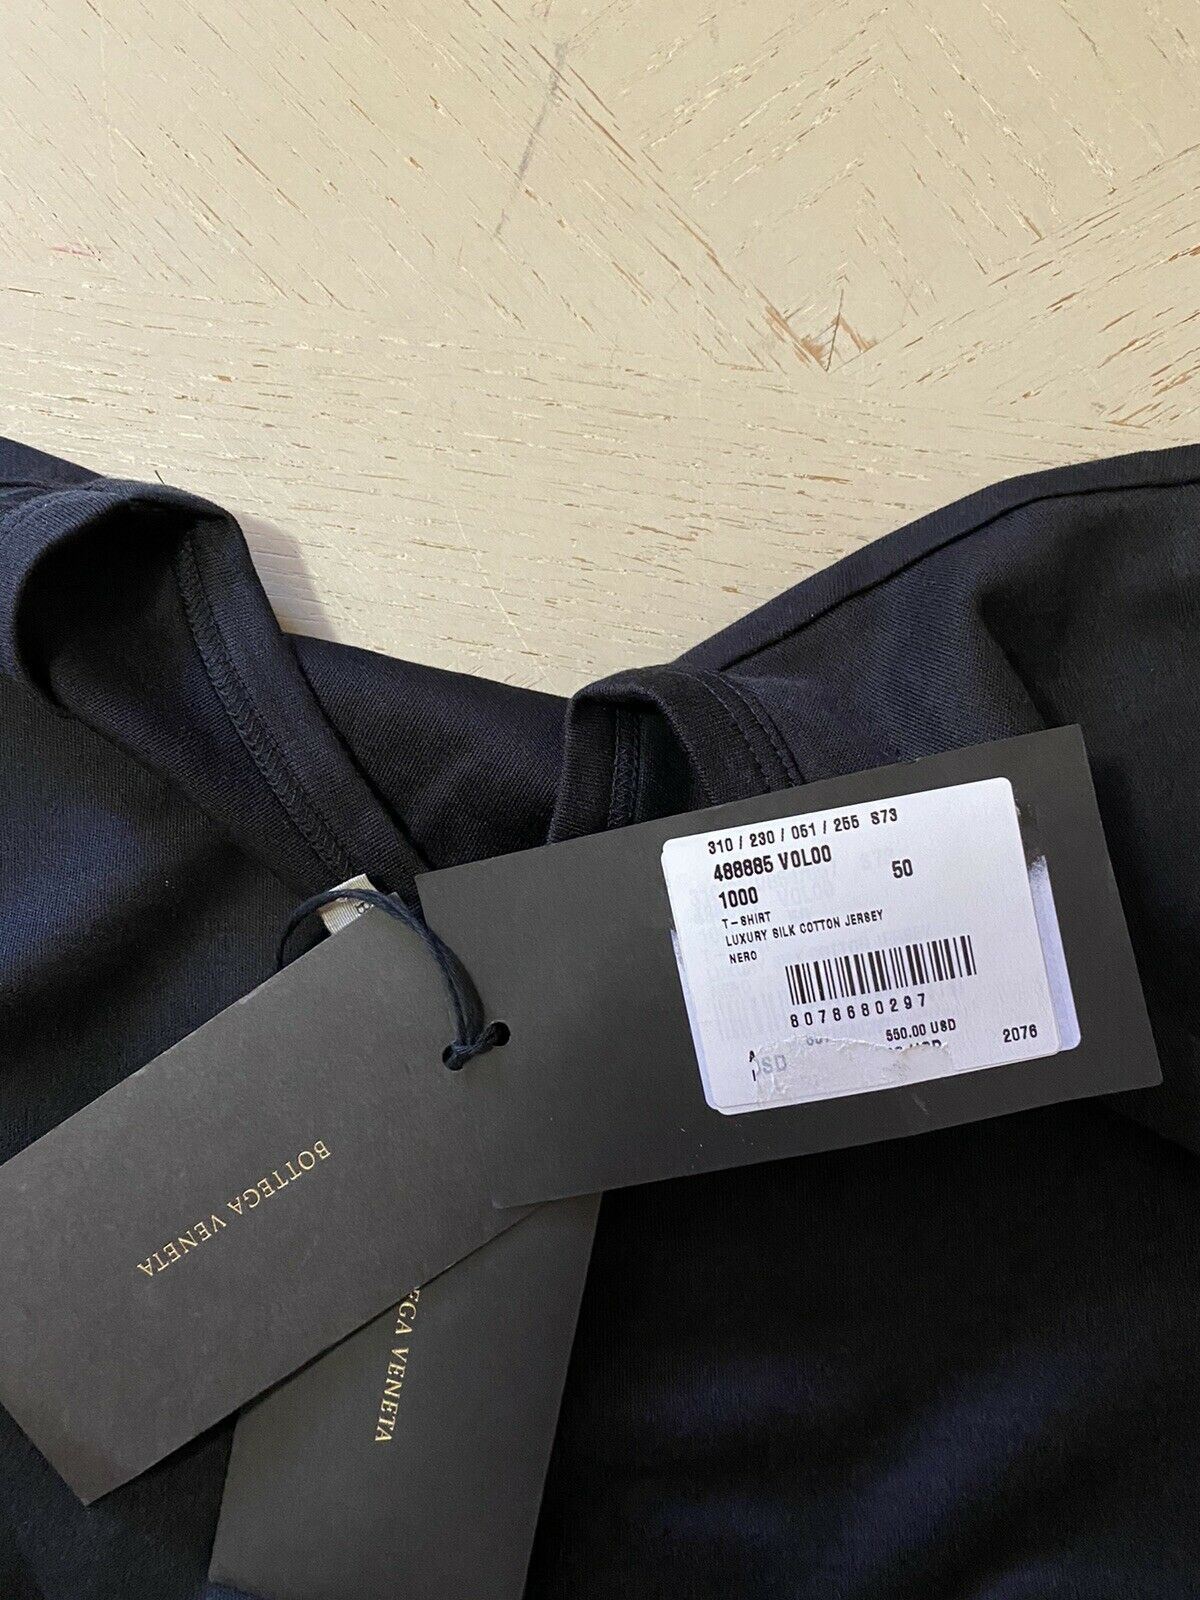 Новая мужская роскошная футболка из шелкового/хлопкового джерси с длинным рукавом Bottega Veneta стоимостью 550 долларов M/50 E